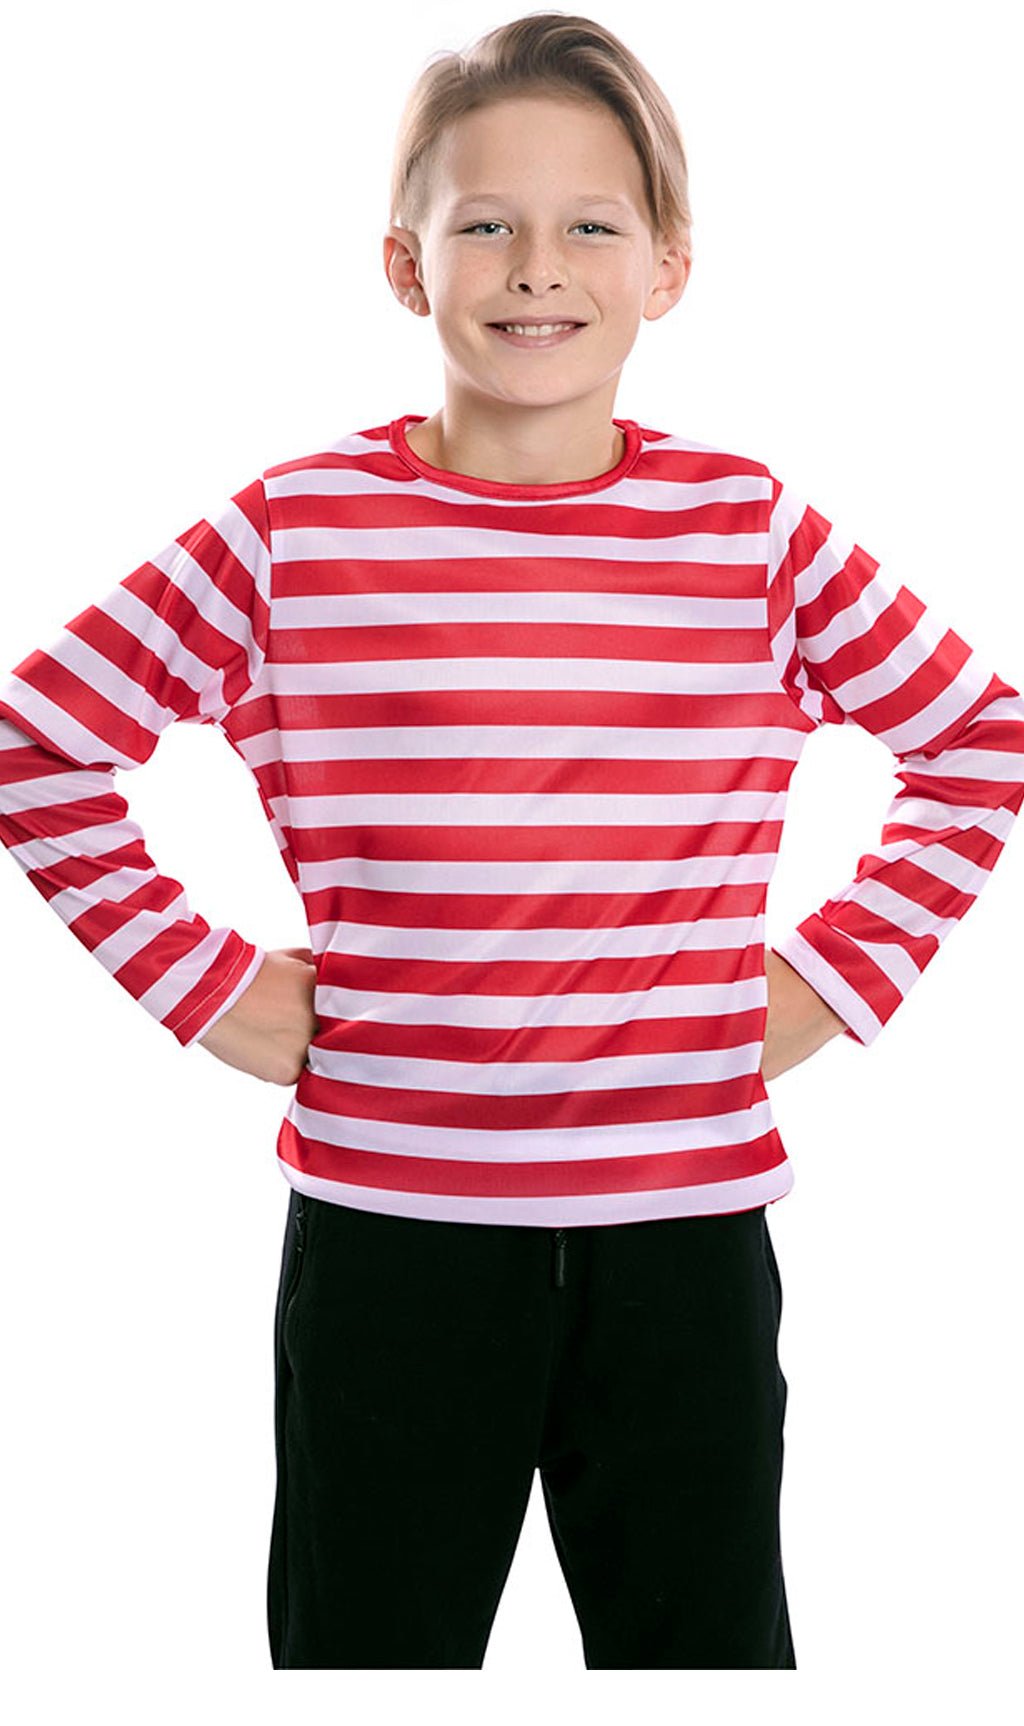 Camiseta de Rayas Rojas y Blancas Infantil